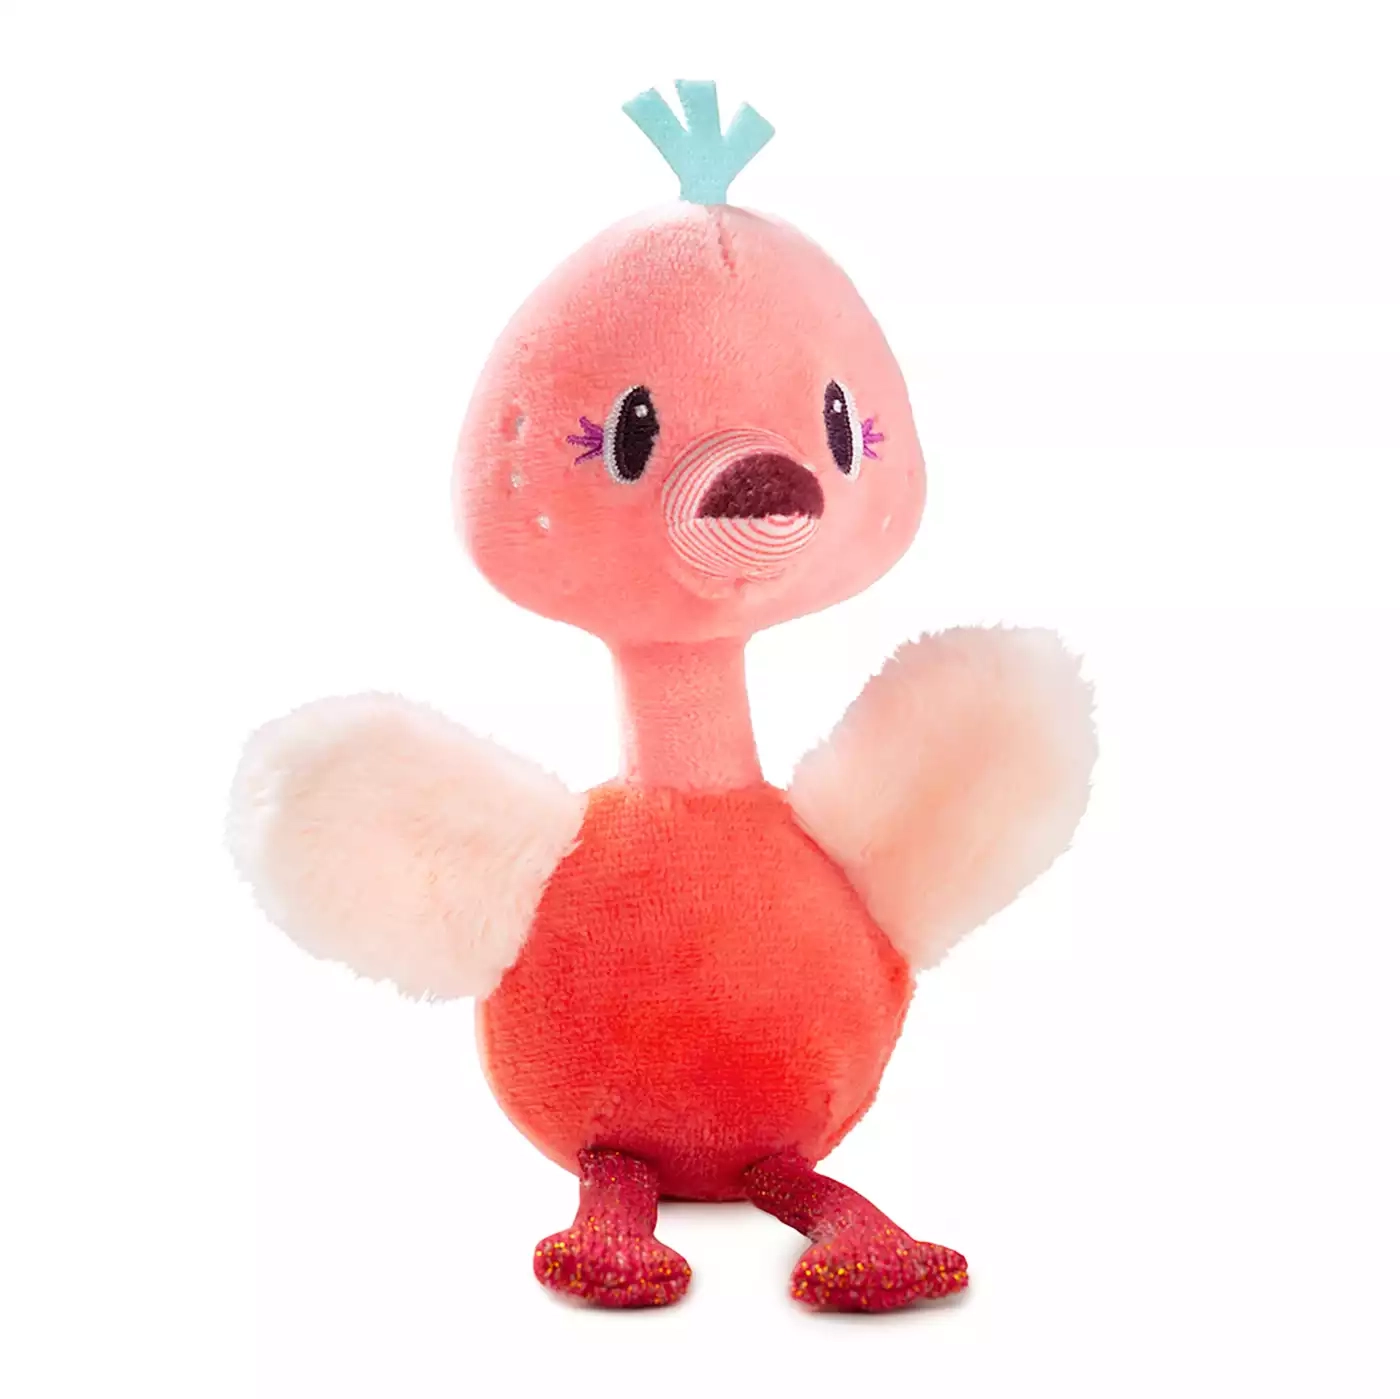 Minifigur Flamingo Anaïs Lilliputiens 2000578219840 3